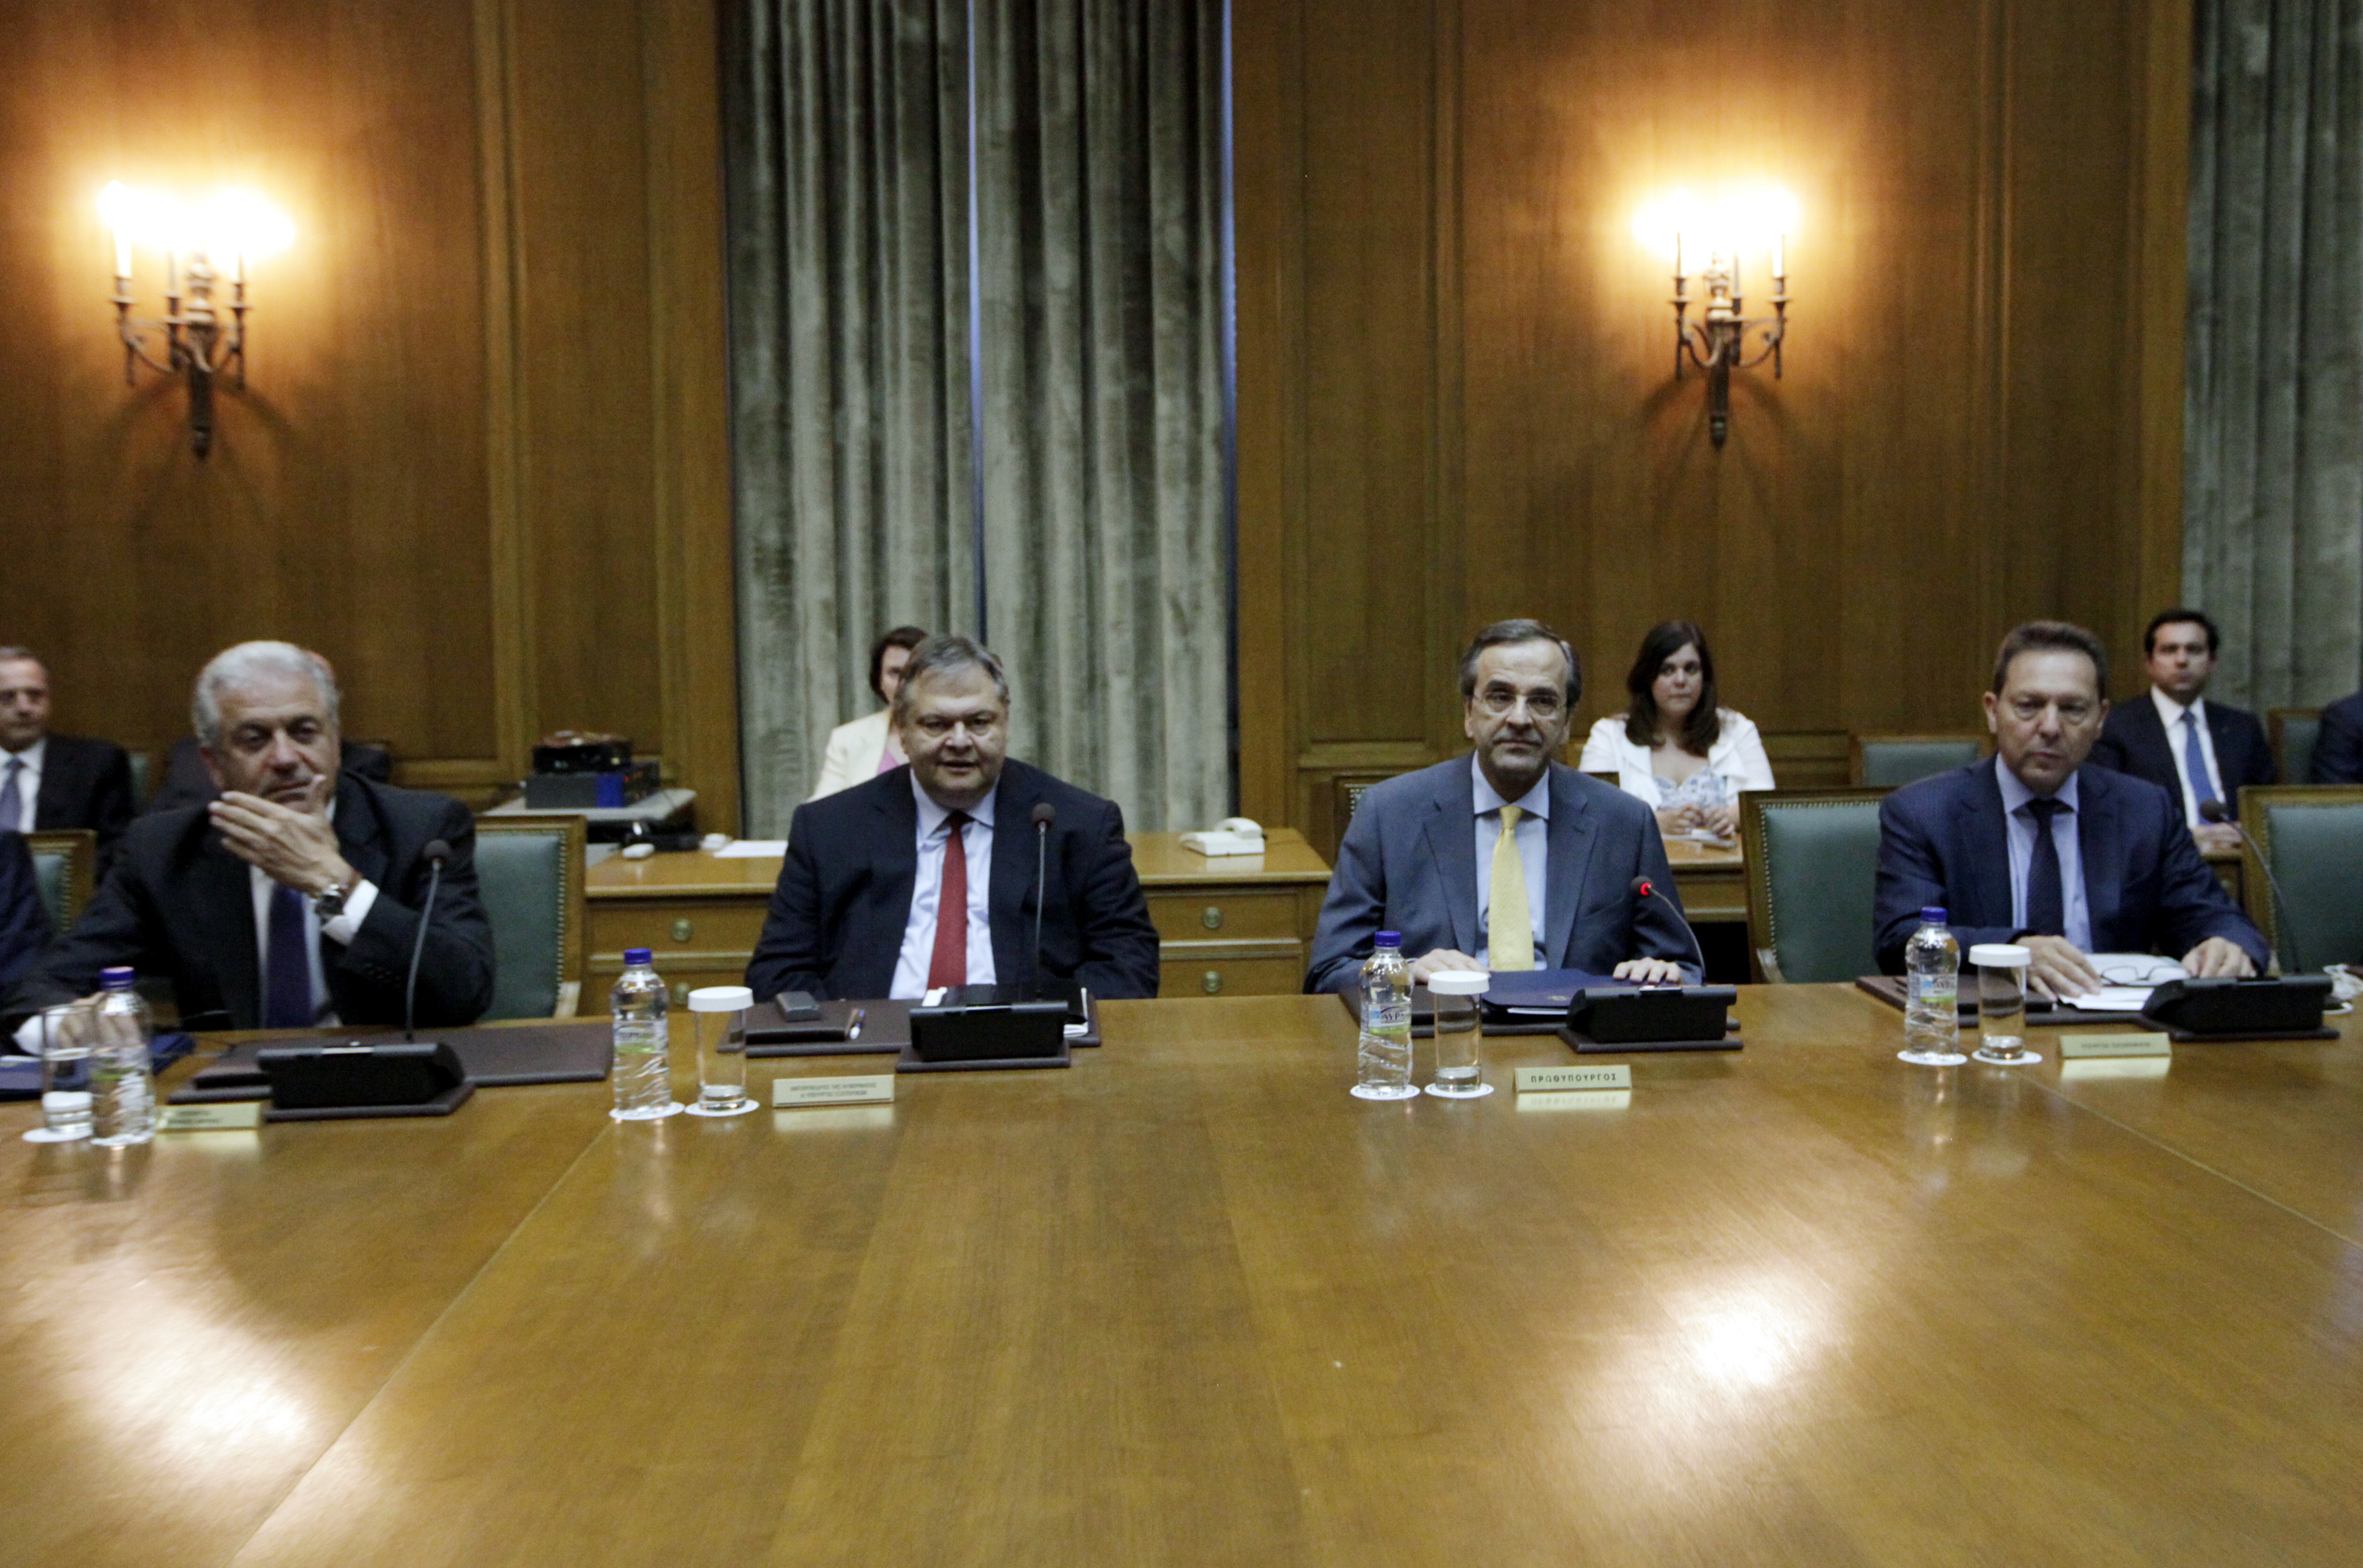 ΦΩΤΟ EUROKINISSI - Ο Αντώνης Σαμαράς στο υπουργικό Συμβούλιο